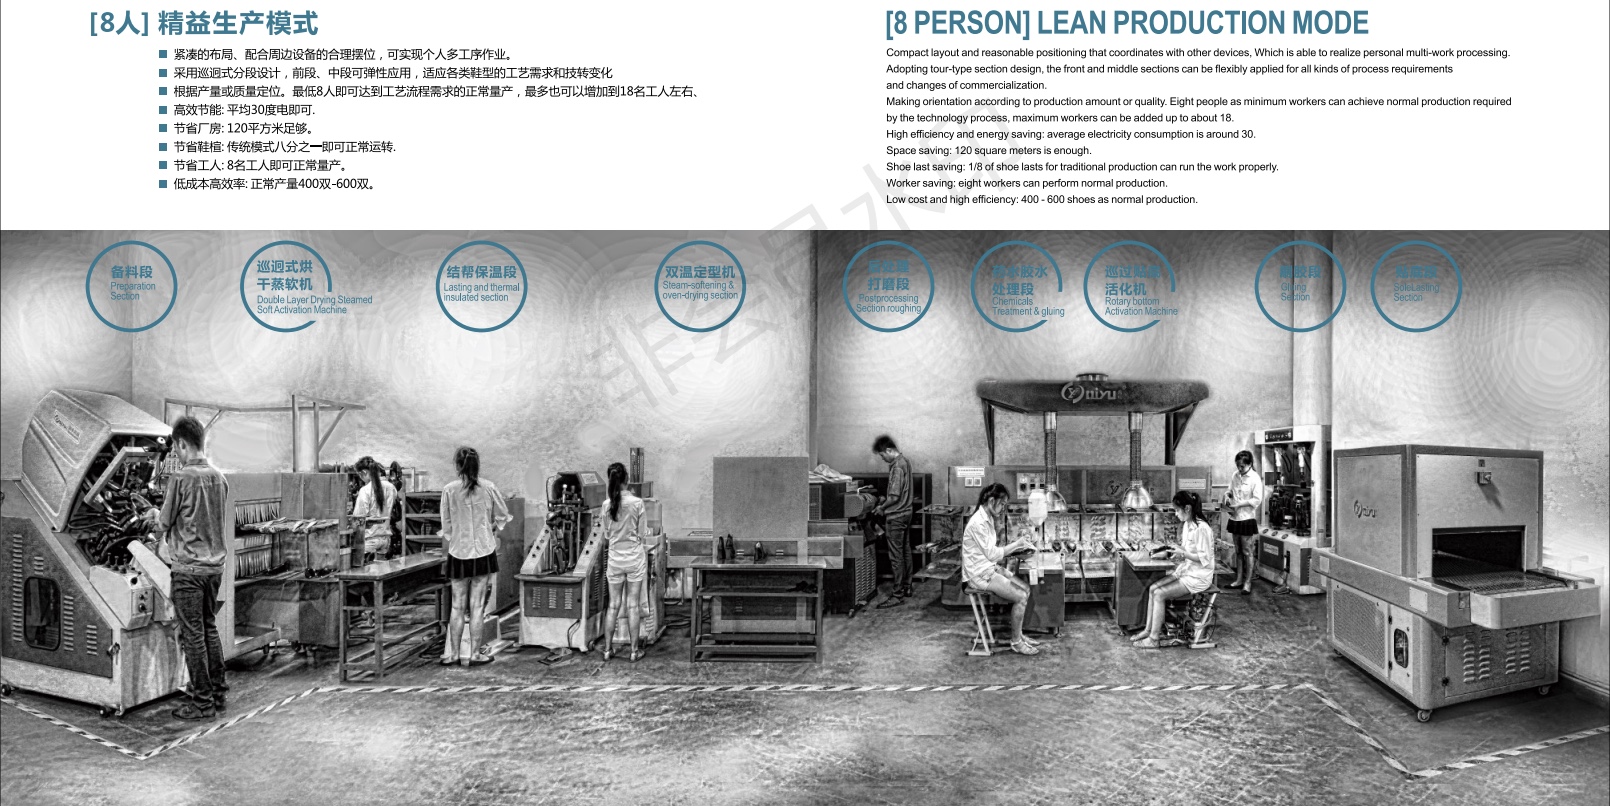 8 PERSON LEAN PRODUCTION MODE